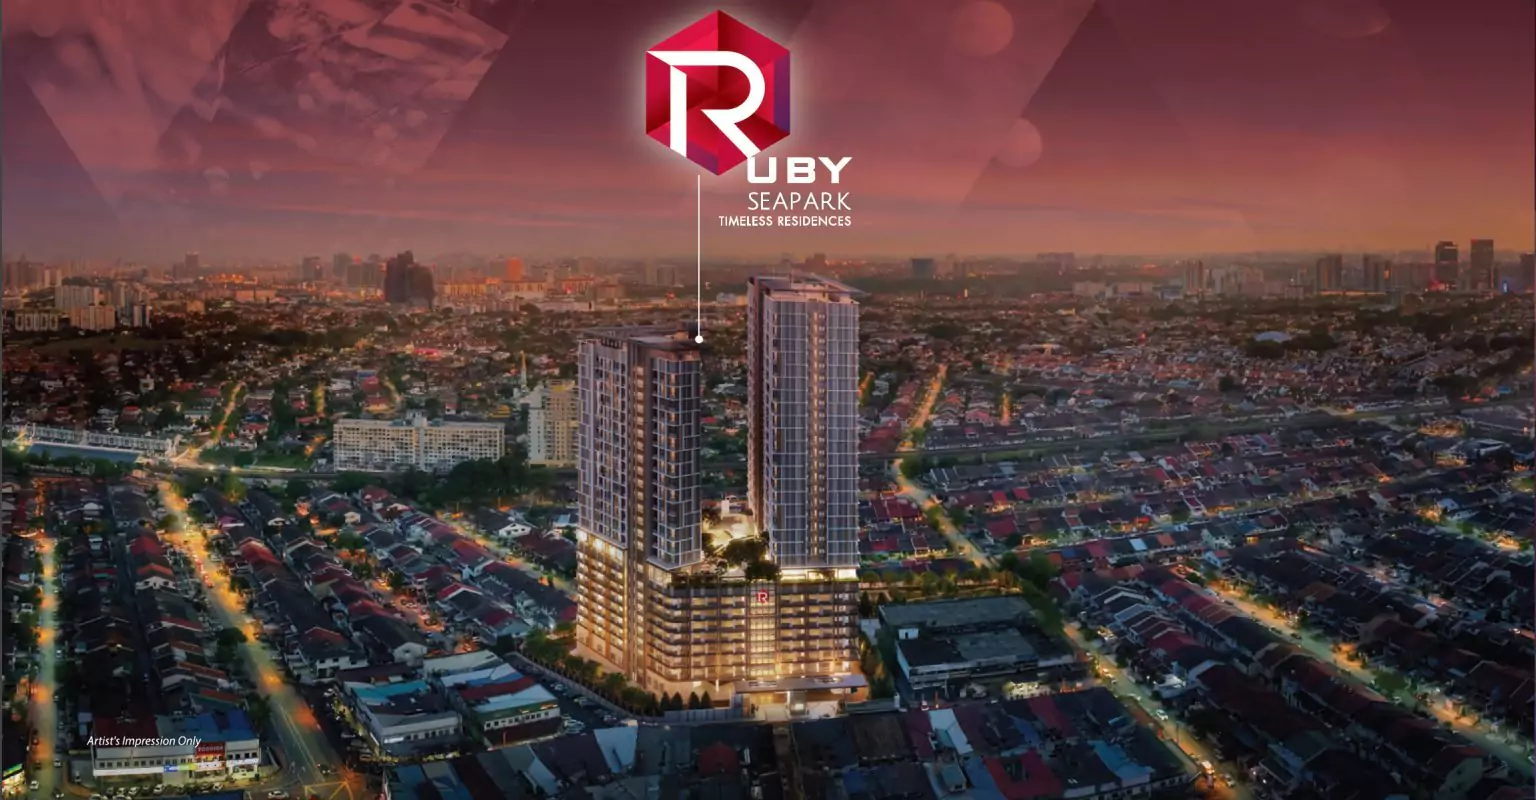 Ruby Seapark-Petaling Jaya